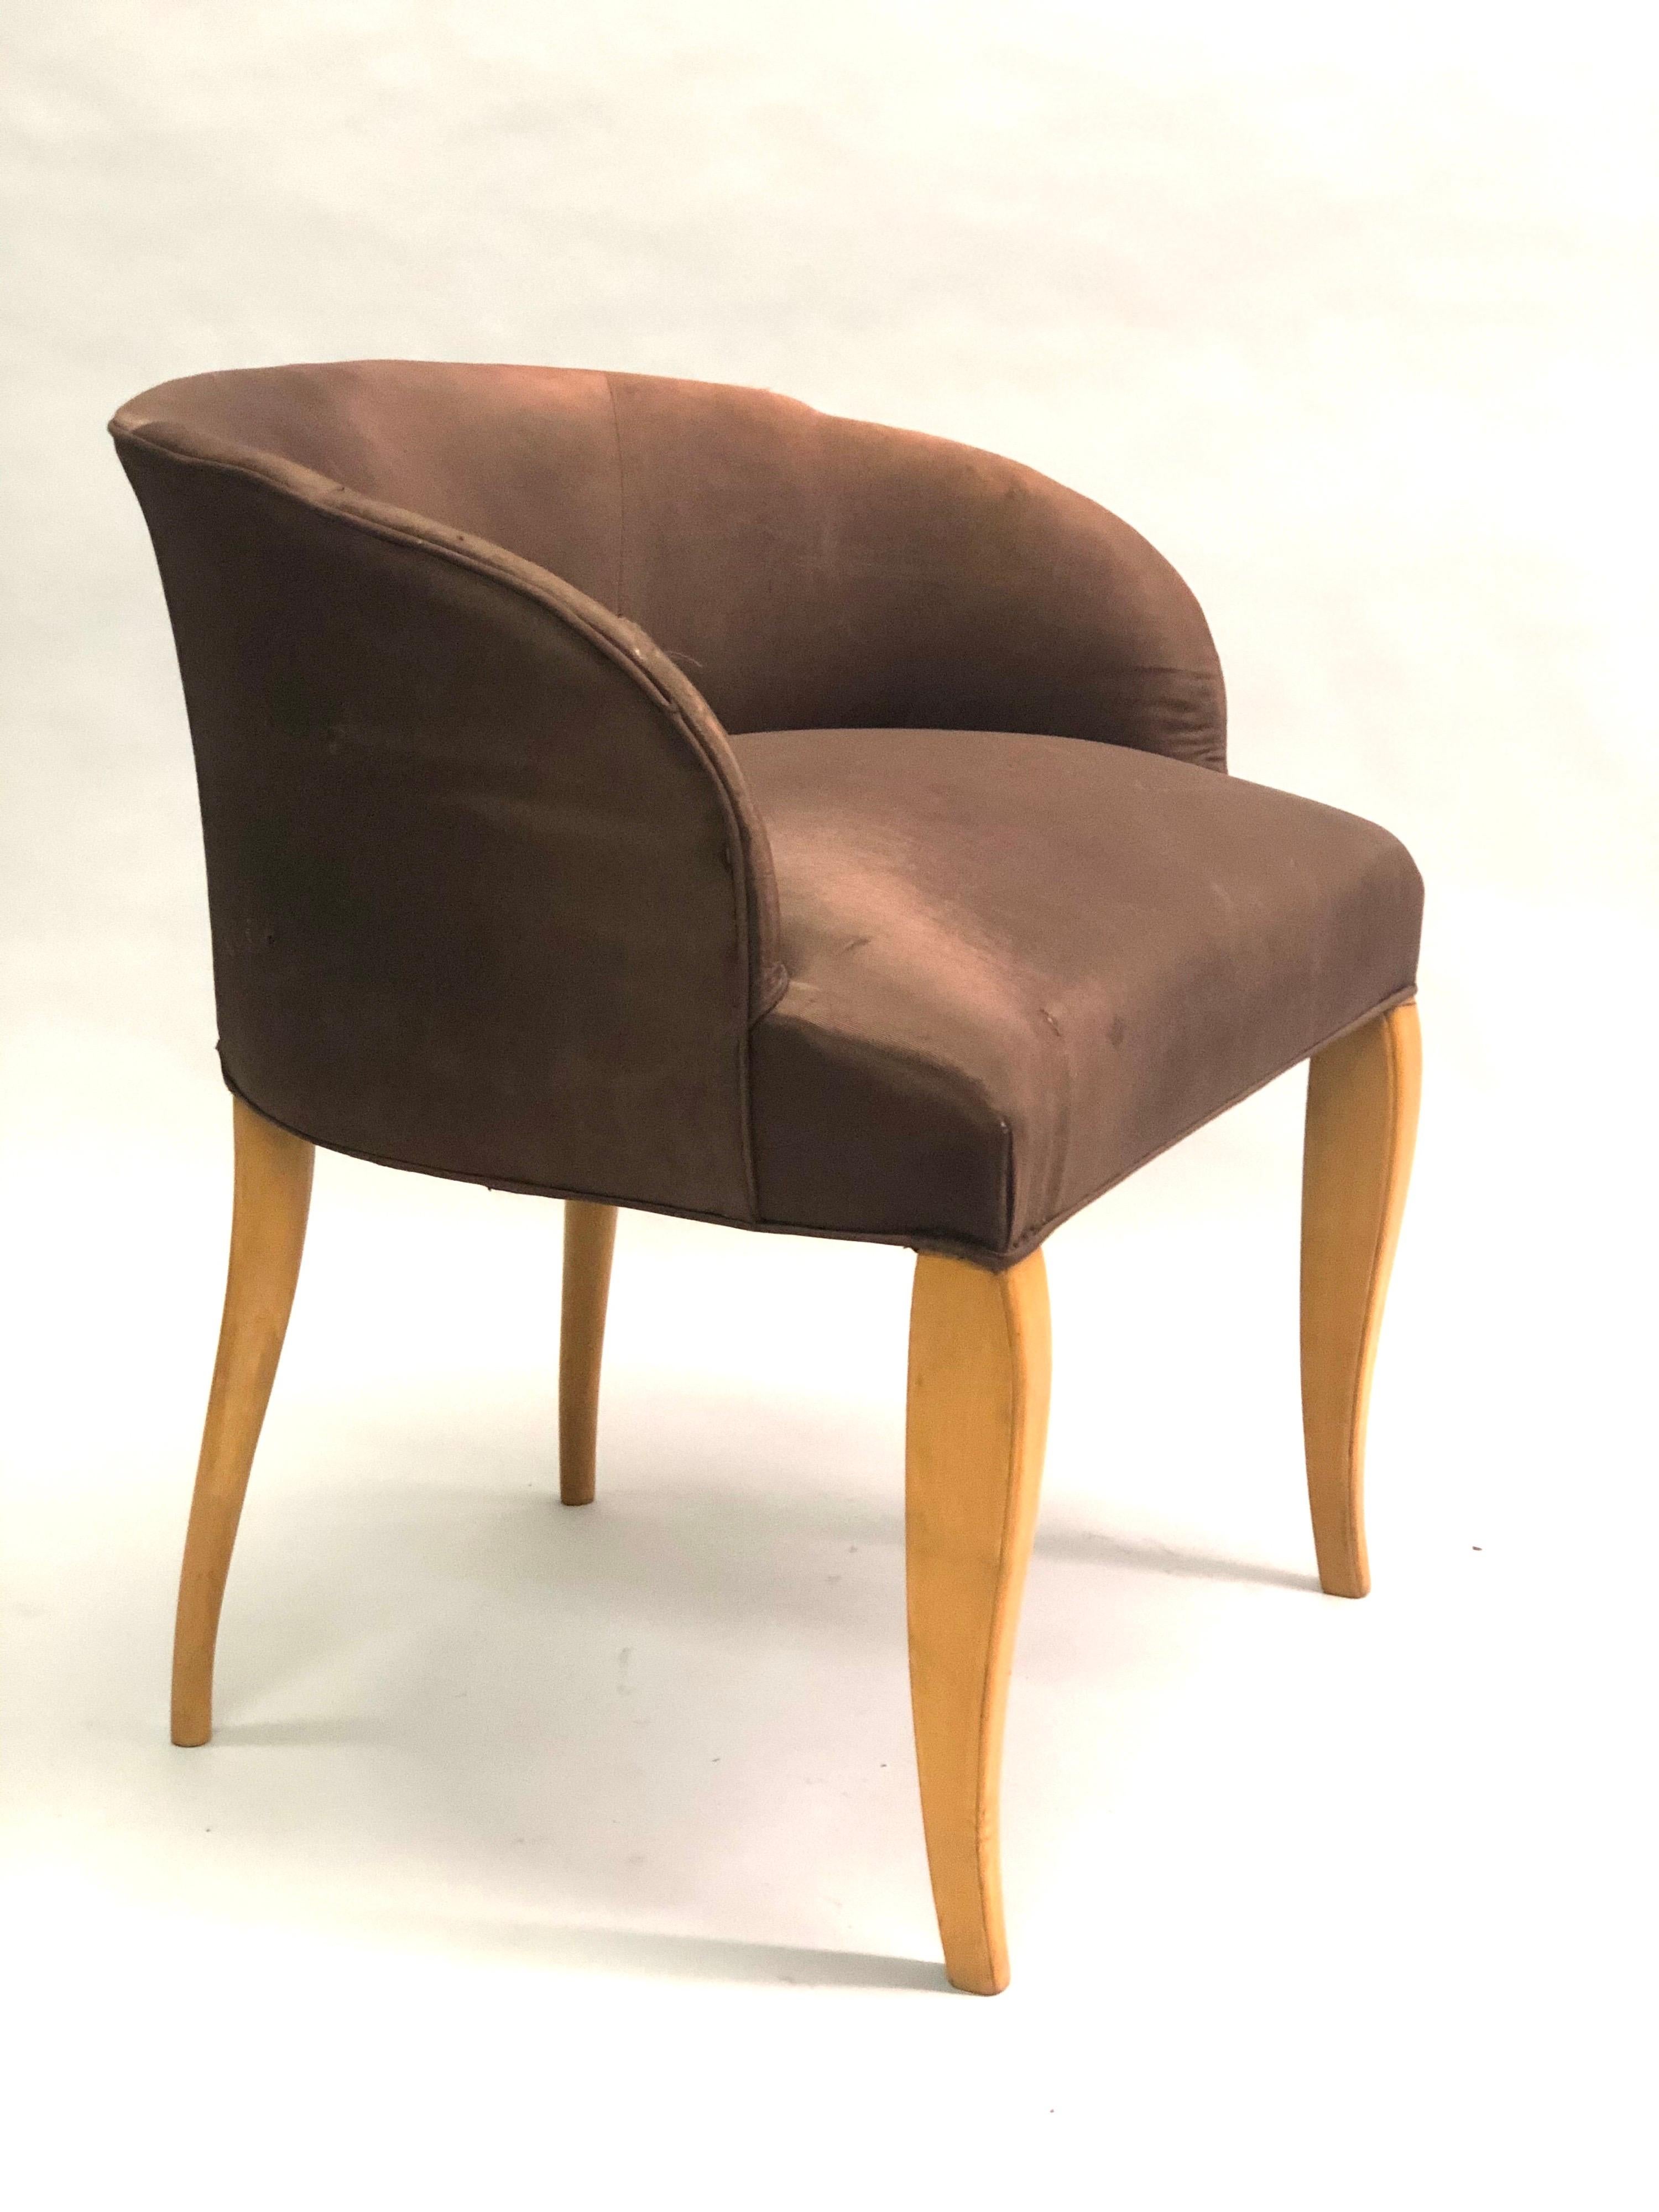 Eleganter, stilvoller französischer / belgischer Art Deco Frisierstuhl aus Sykomorenholz von Van der Borcht Freres, um 1925-1930. Das Stück hat eine exquisite Form, die durch die schräge, ovale, tonnenförmige Rückenlehne hervorgehoben wird, die von